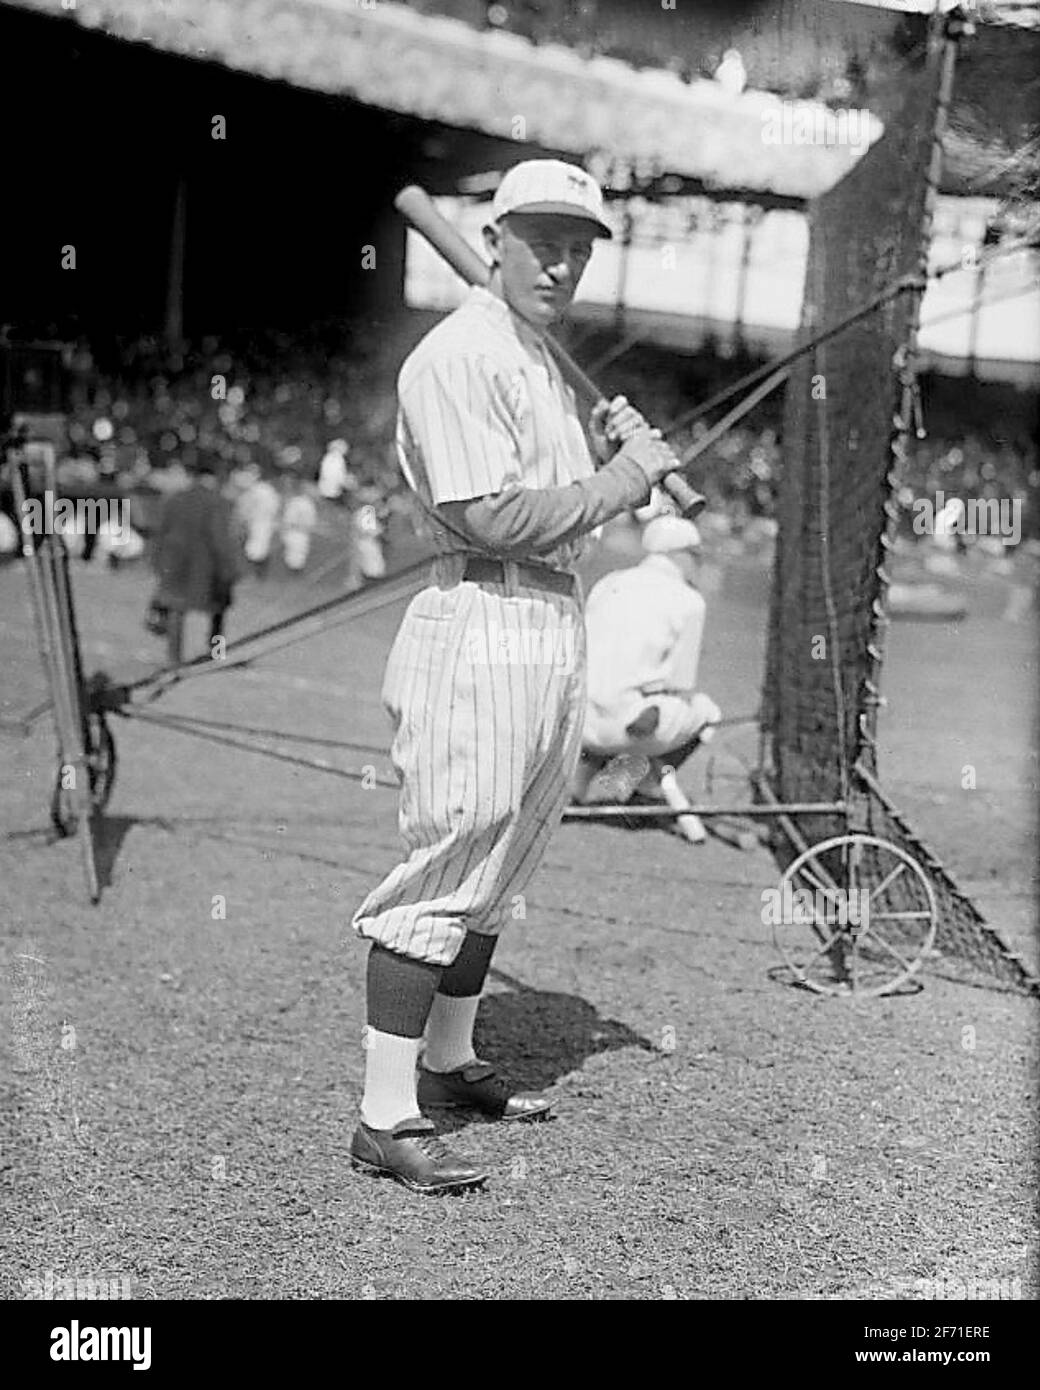 Frankie Frisch, New York Giants, 1921 Stock Photo - Alamy